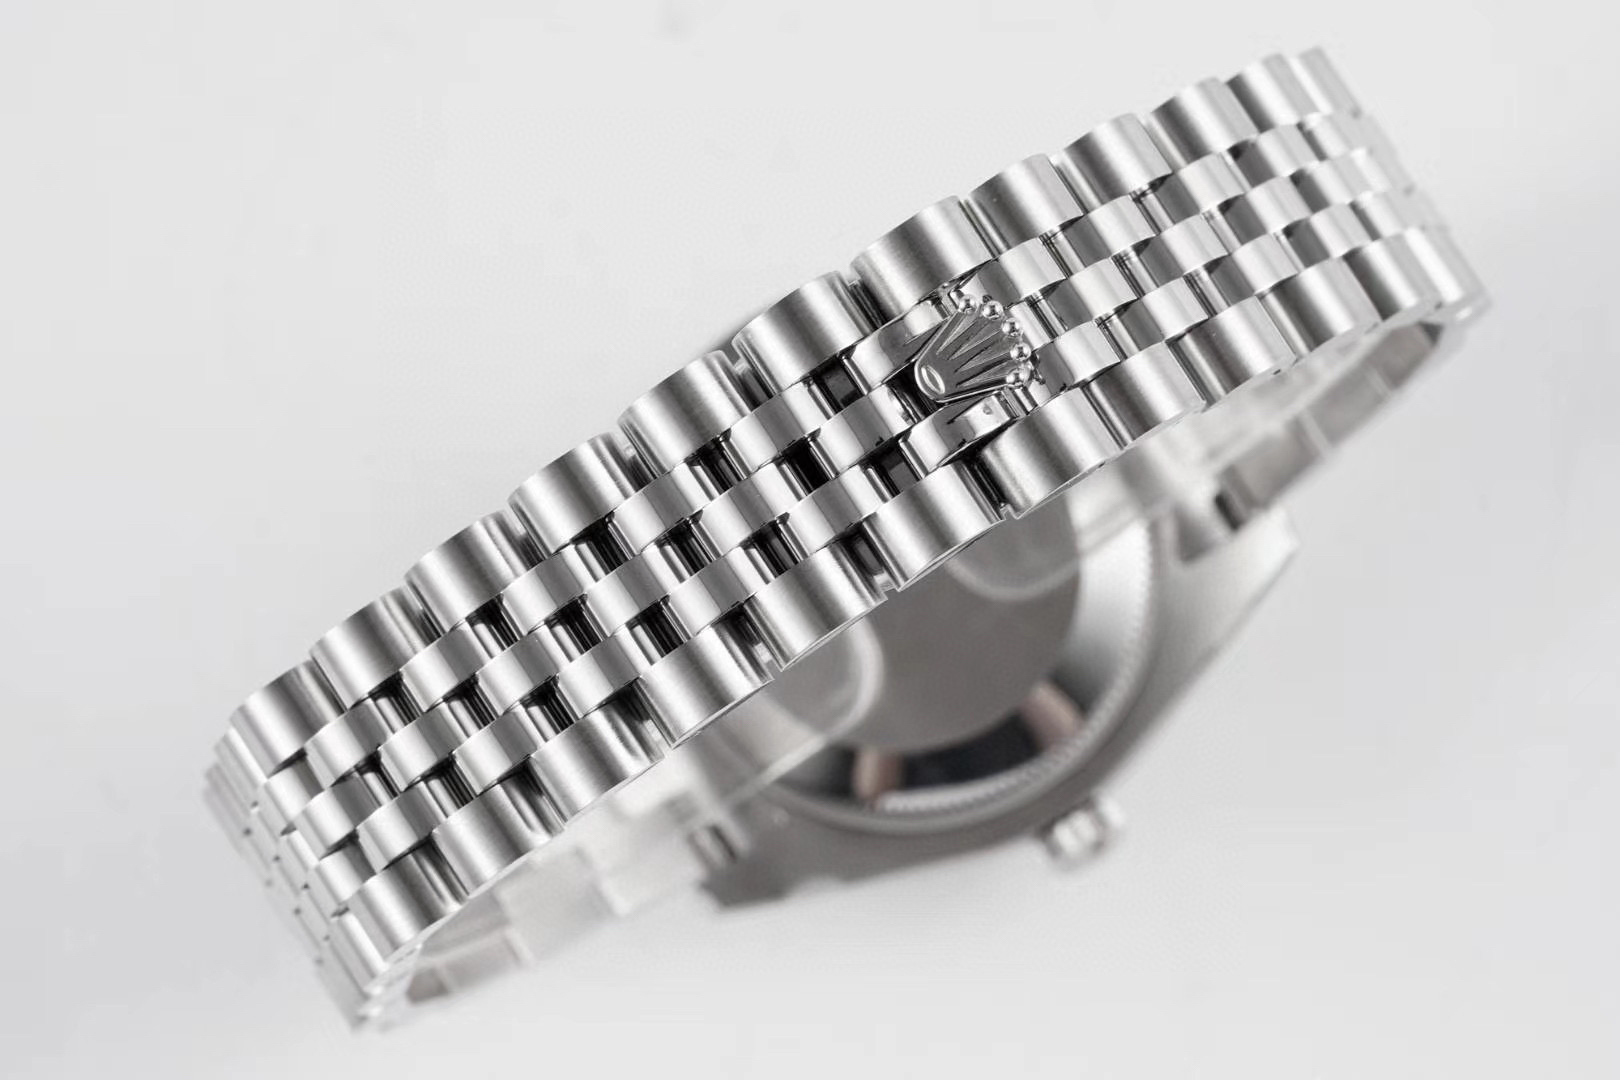 2023020810101434 - 精仿勞力士日誌女錶哪個廠手錶的好 gs廠手錶勞力士日誌型 m178274-0037 女錶￥2880